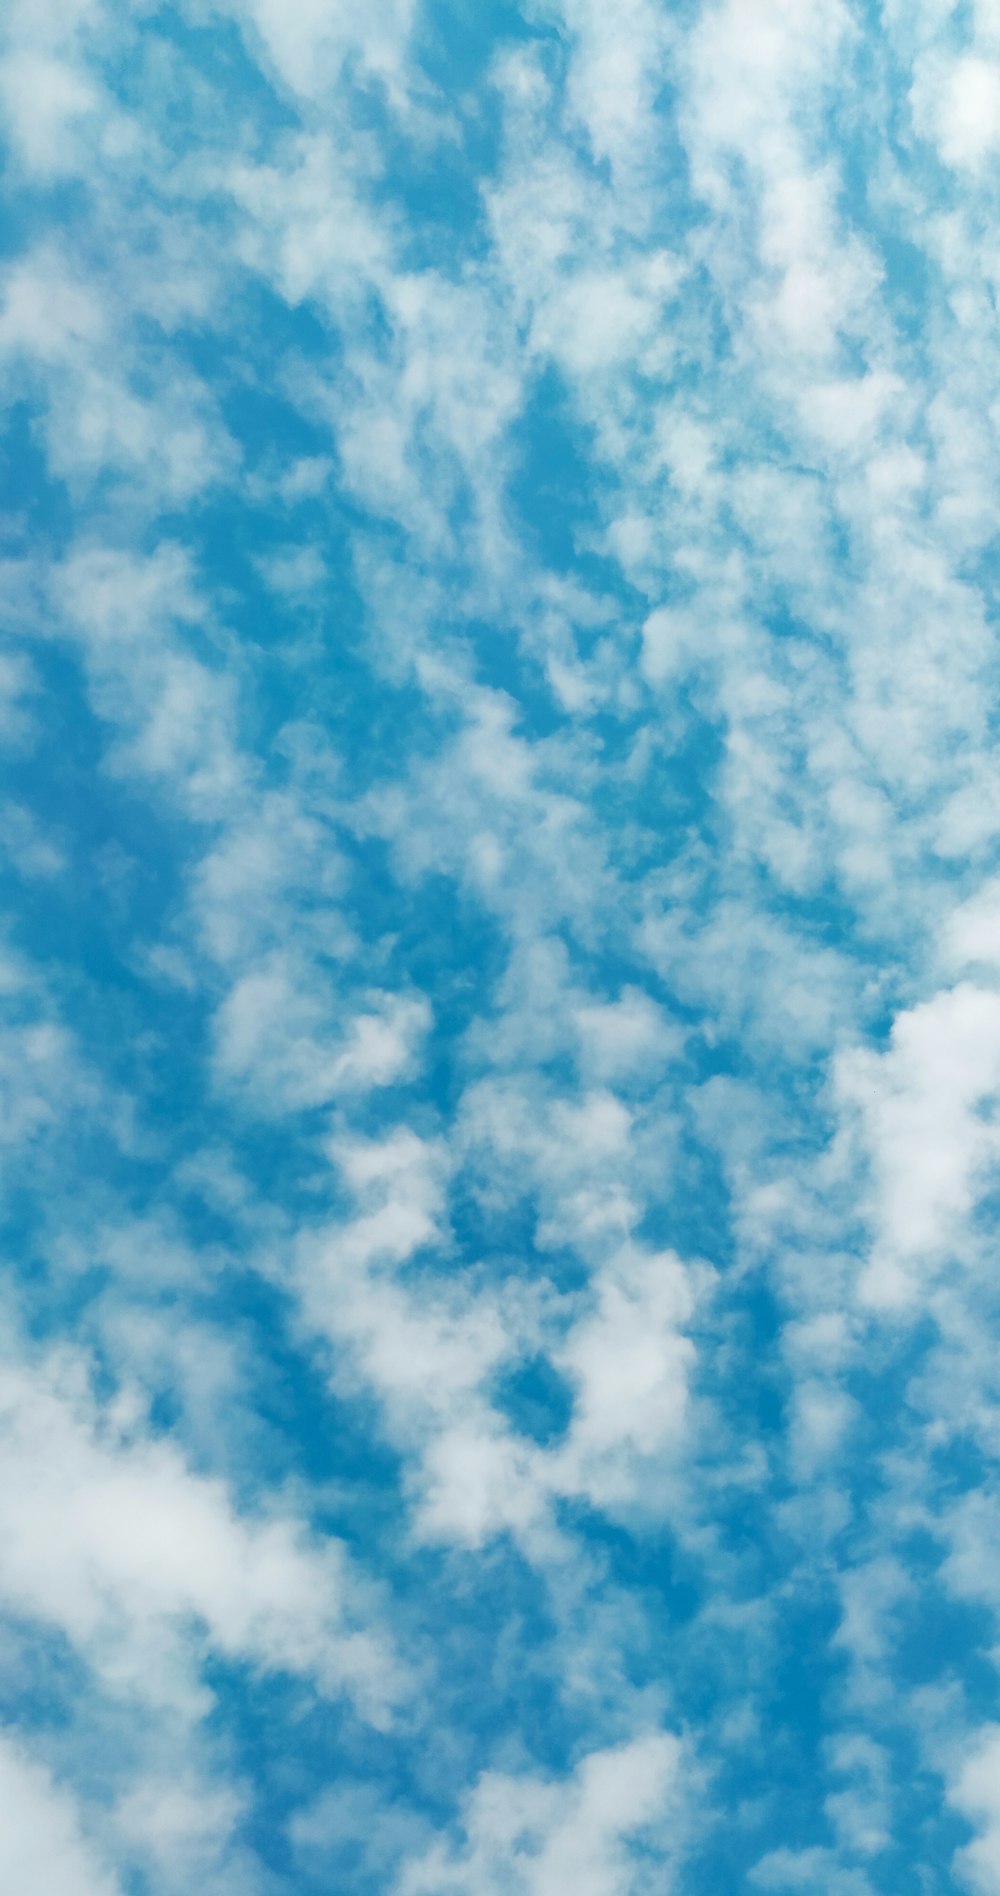 Hình ảnh đầu trang xanh trời mây trắng: Cảm nhận bầu trời xanh thẳm khơi nguồn sáng tưởng tượng và được trang trí bởi những đám mây trắng như bông bốn phương. Hãy xem các hình ảnh đầu trang xanh trời mây trắng tuyệt đẹp để mở ra một thế giới mới.